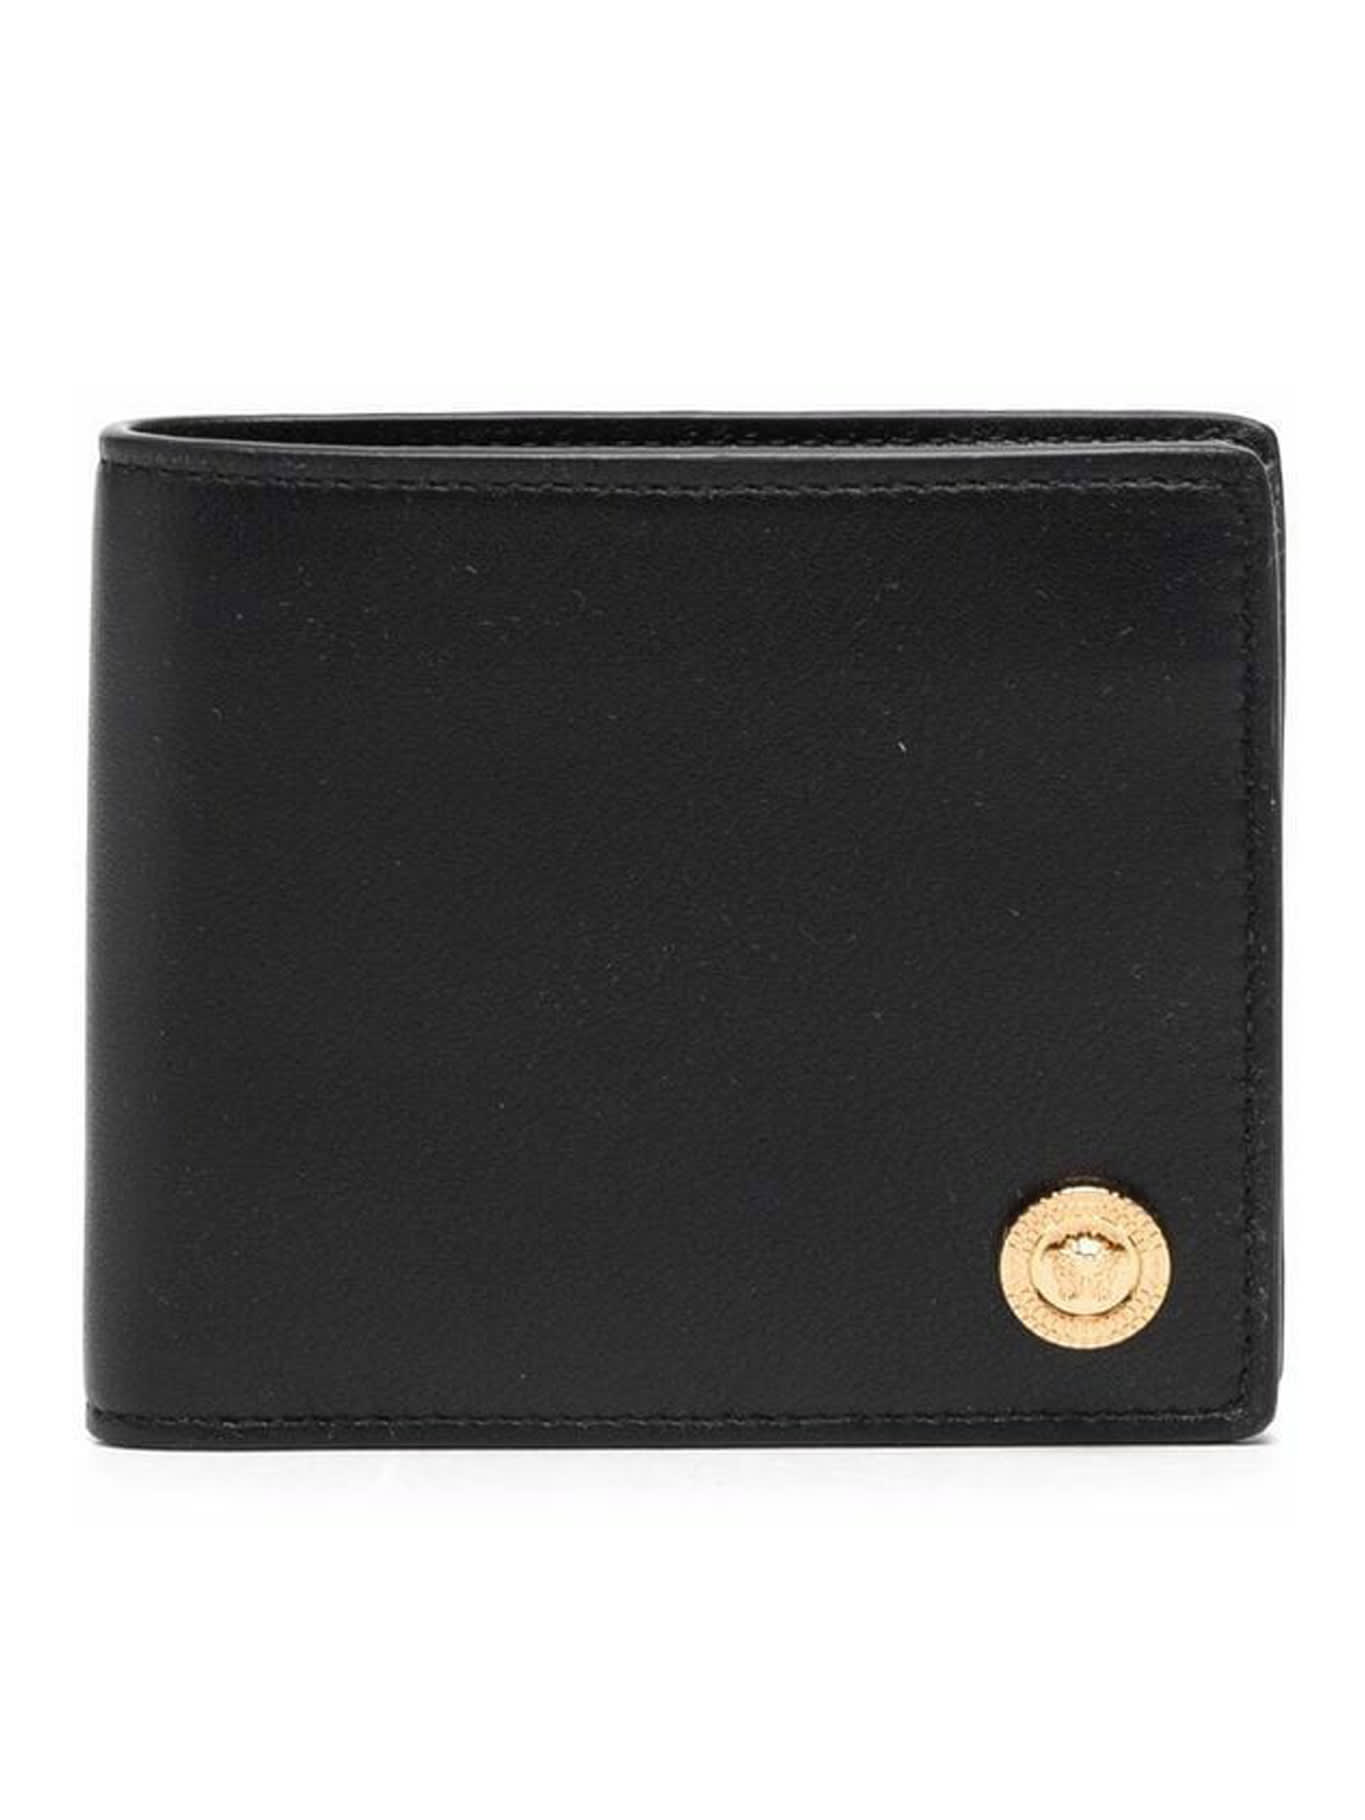 Versace Compact Wallet